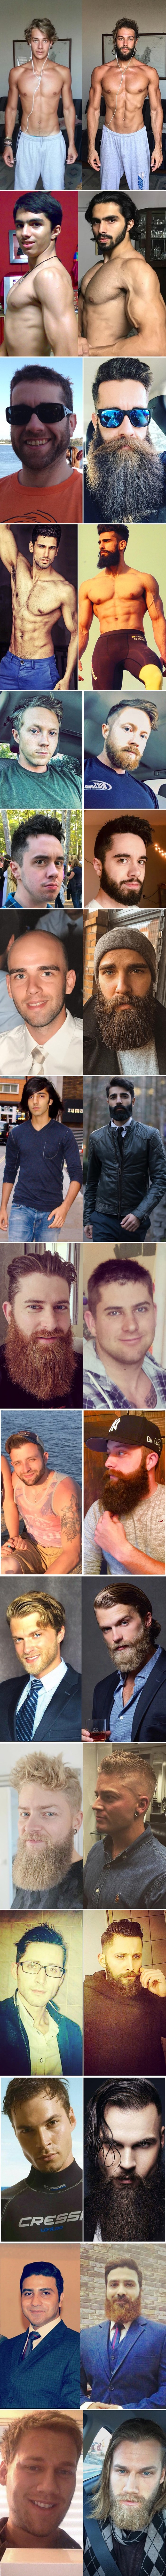 Ovi primjeri dokazuju da brada muškarcima daje "ono nešto" što žene obožavaju